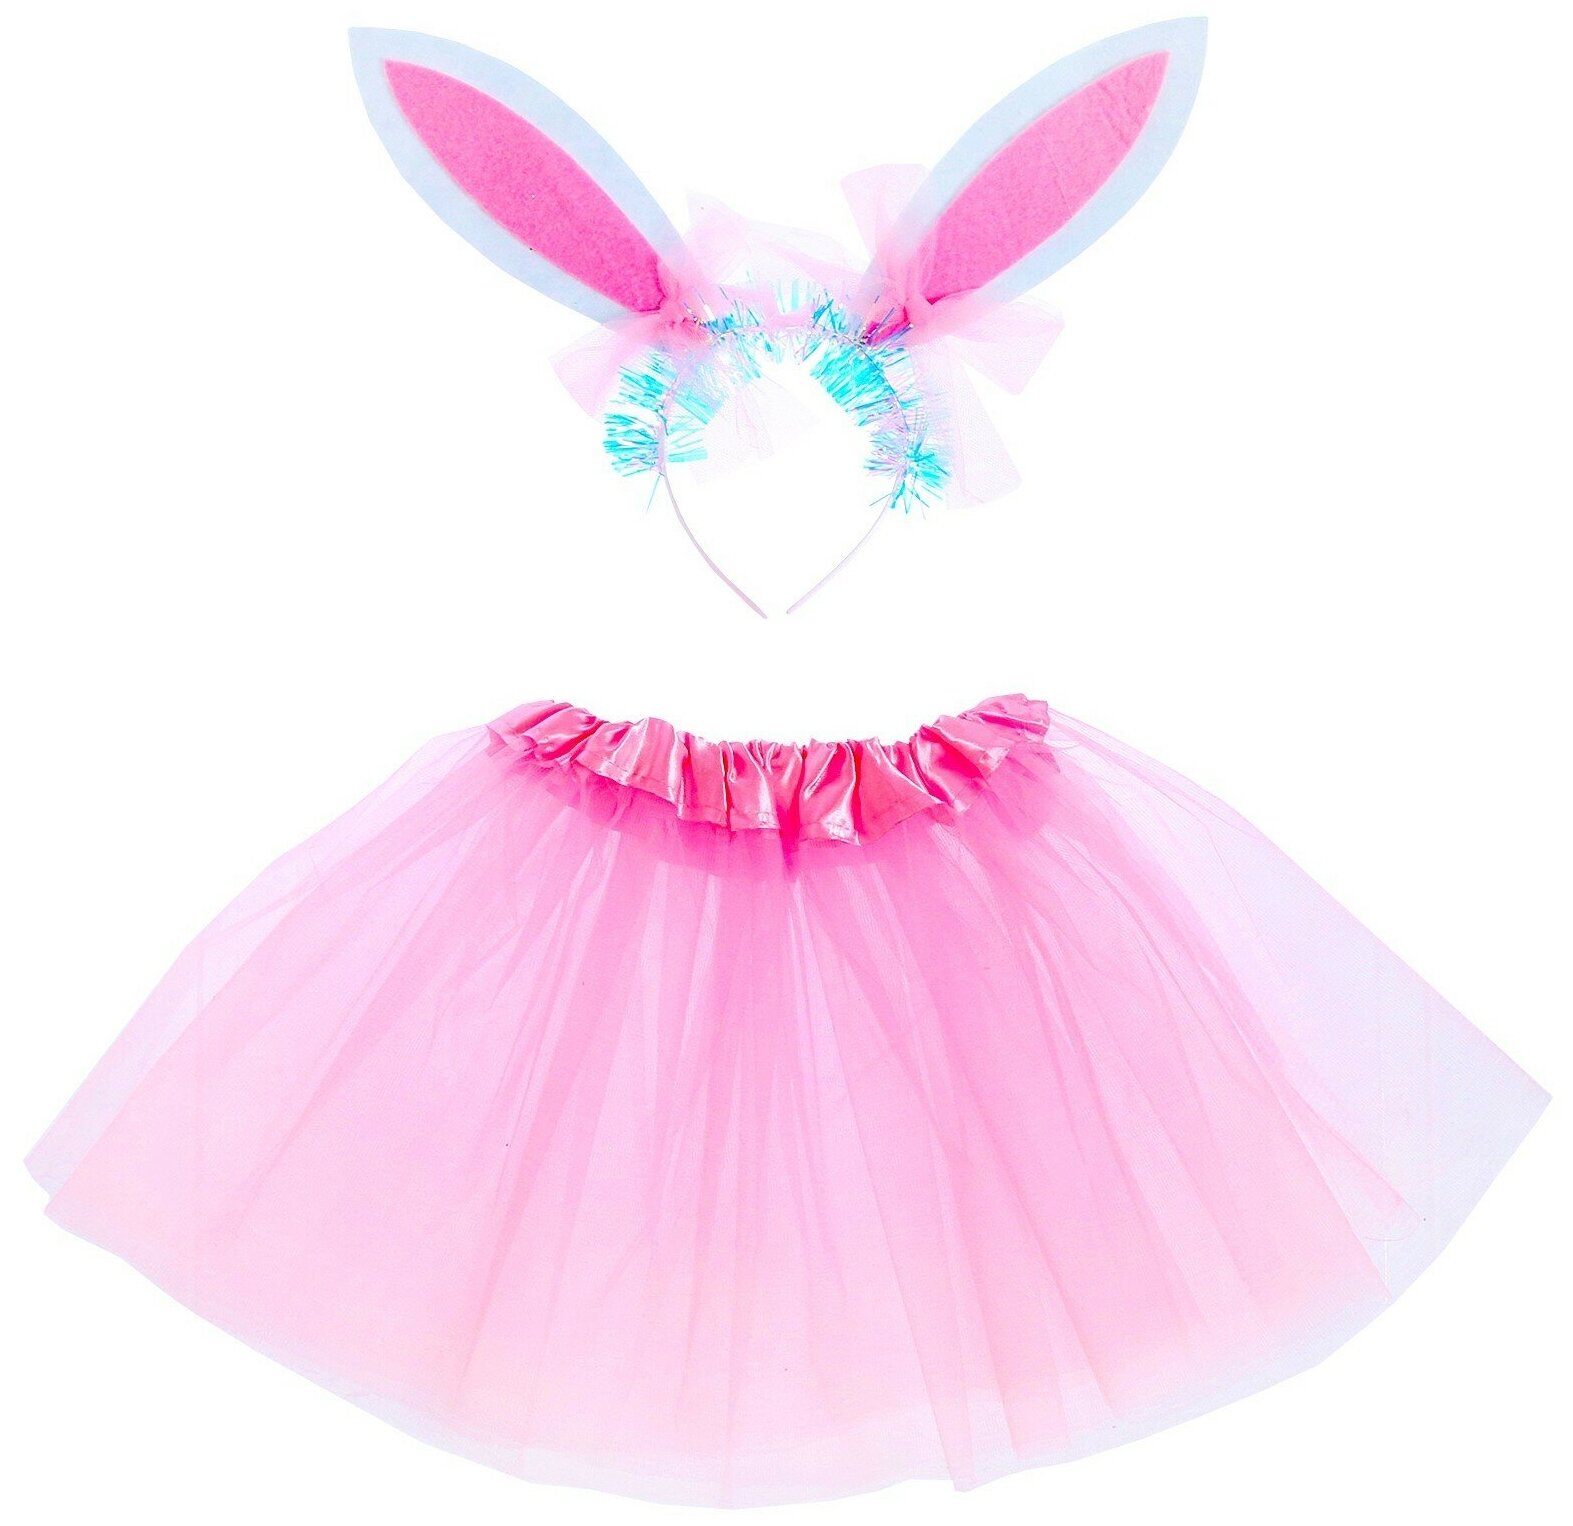 Карнавальный набор «Зайка» 2 предмета: юбка, ободок, цвет розовый